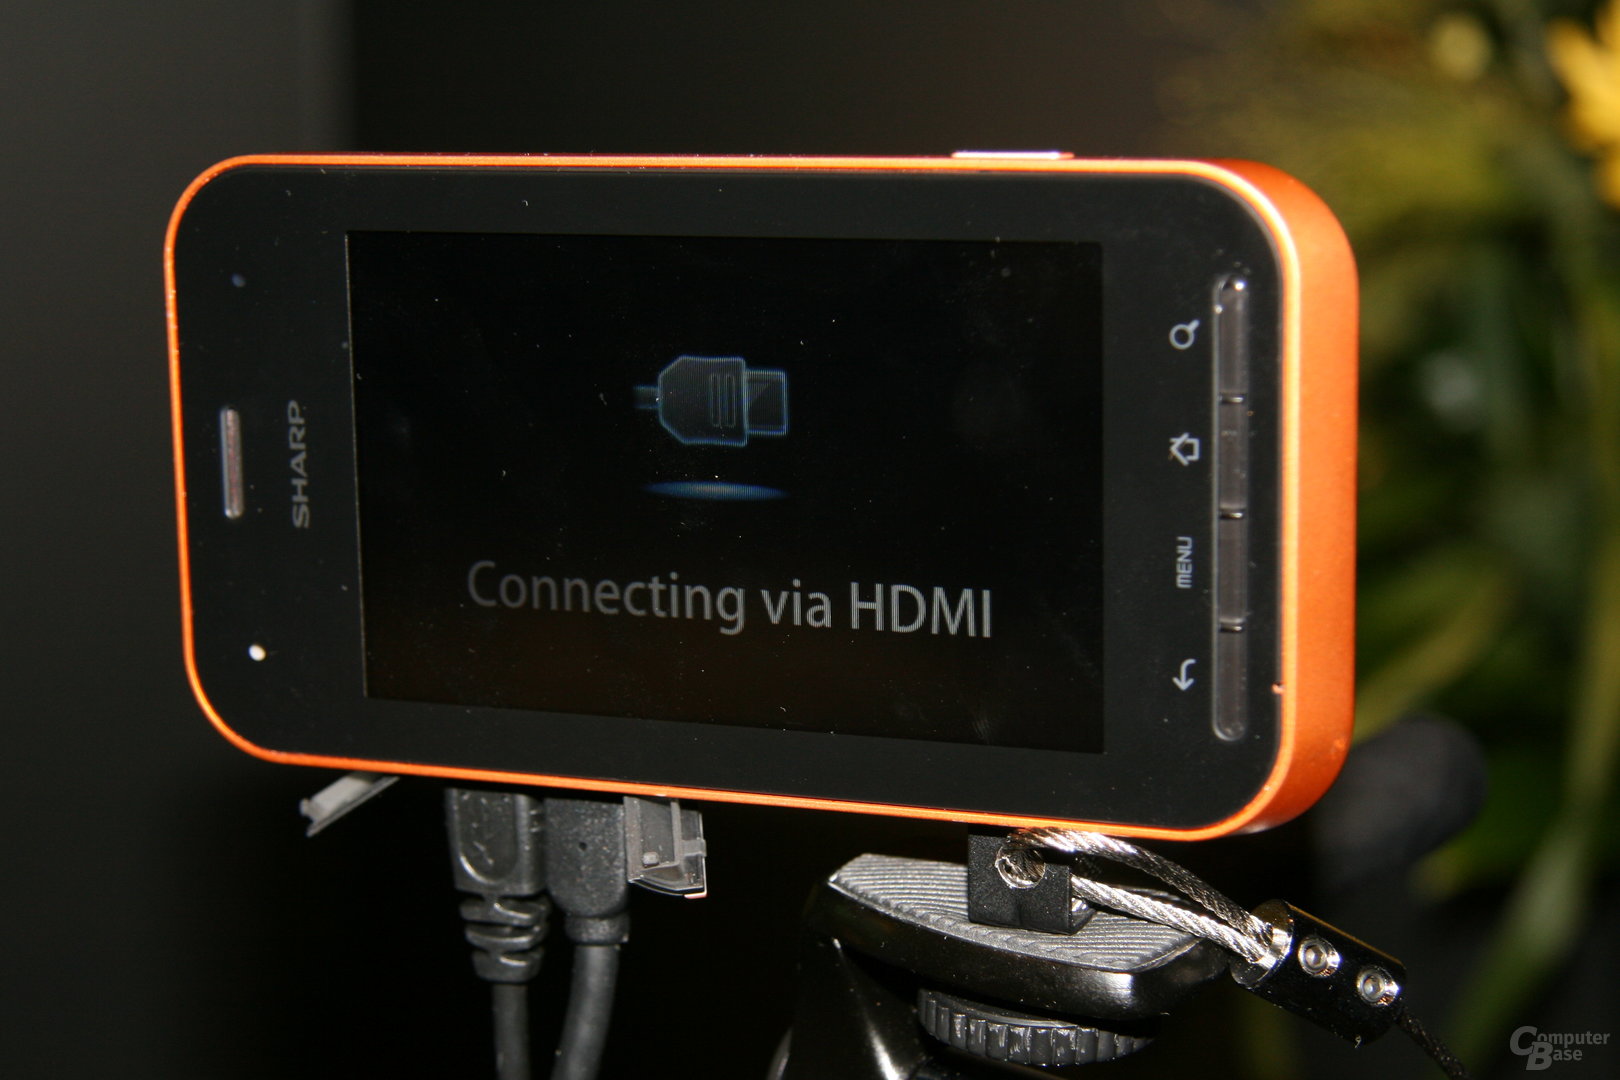 Impressionen von der IFA - Handy mit 3D-Kamera von Sharp